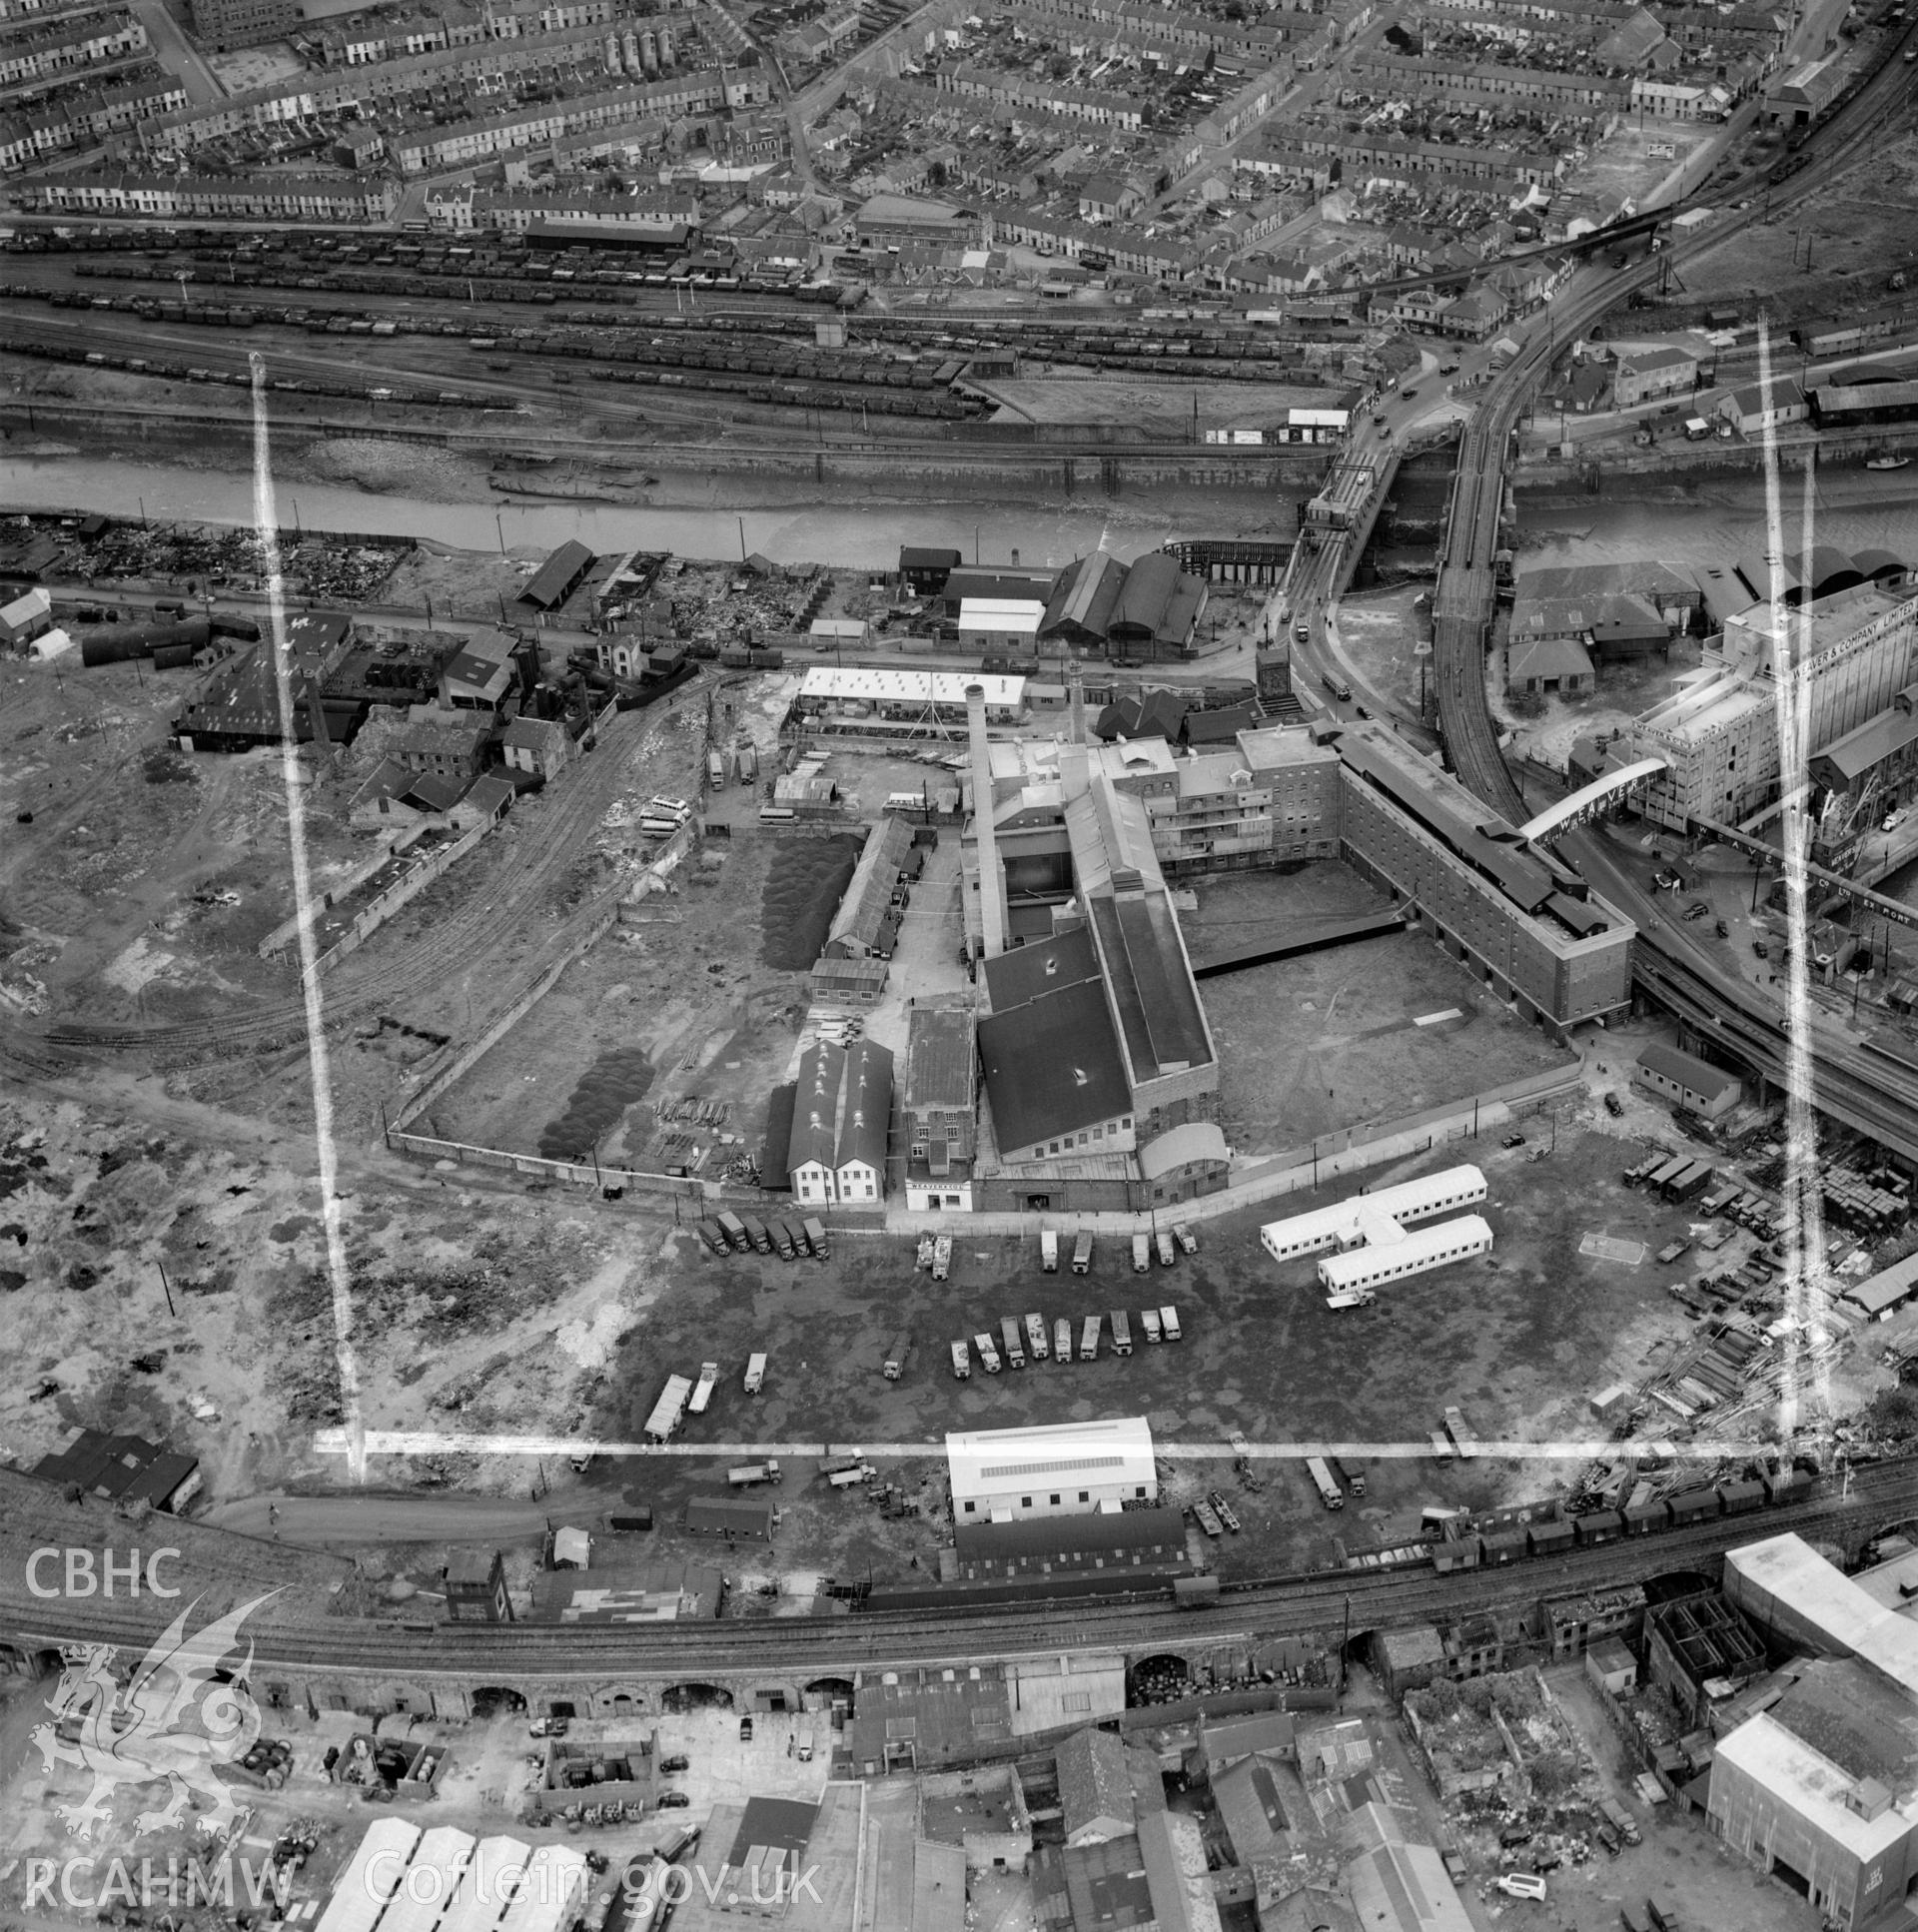 View of Swansea showing Weaver & Co., Ltd. Mill